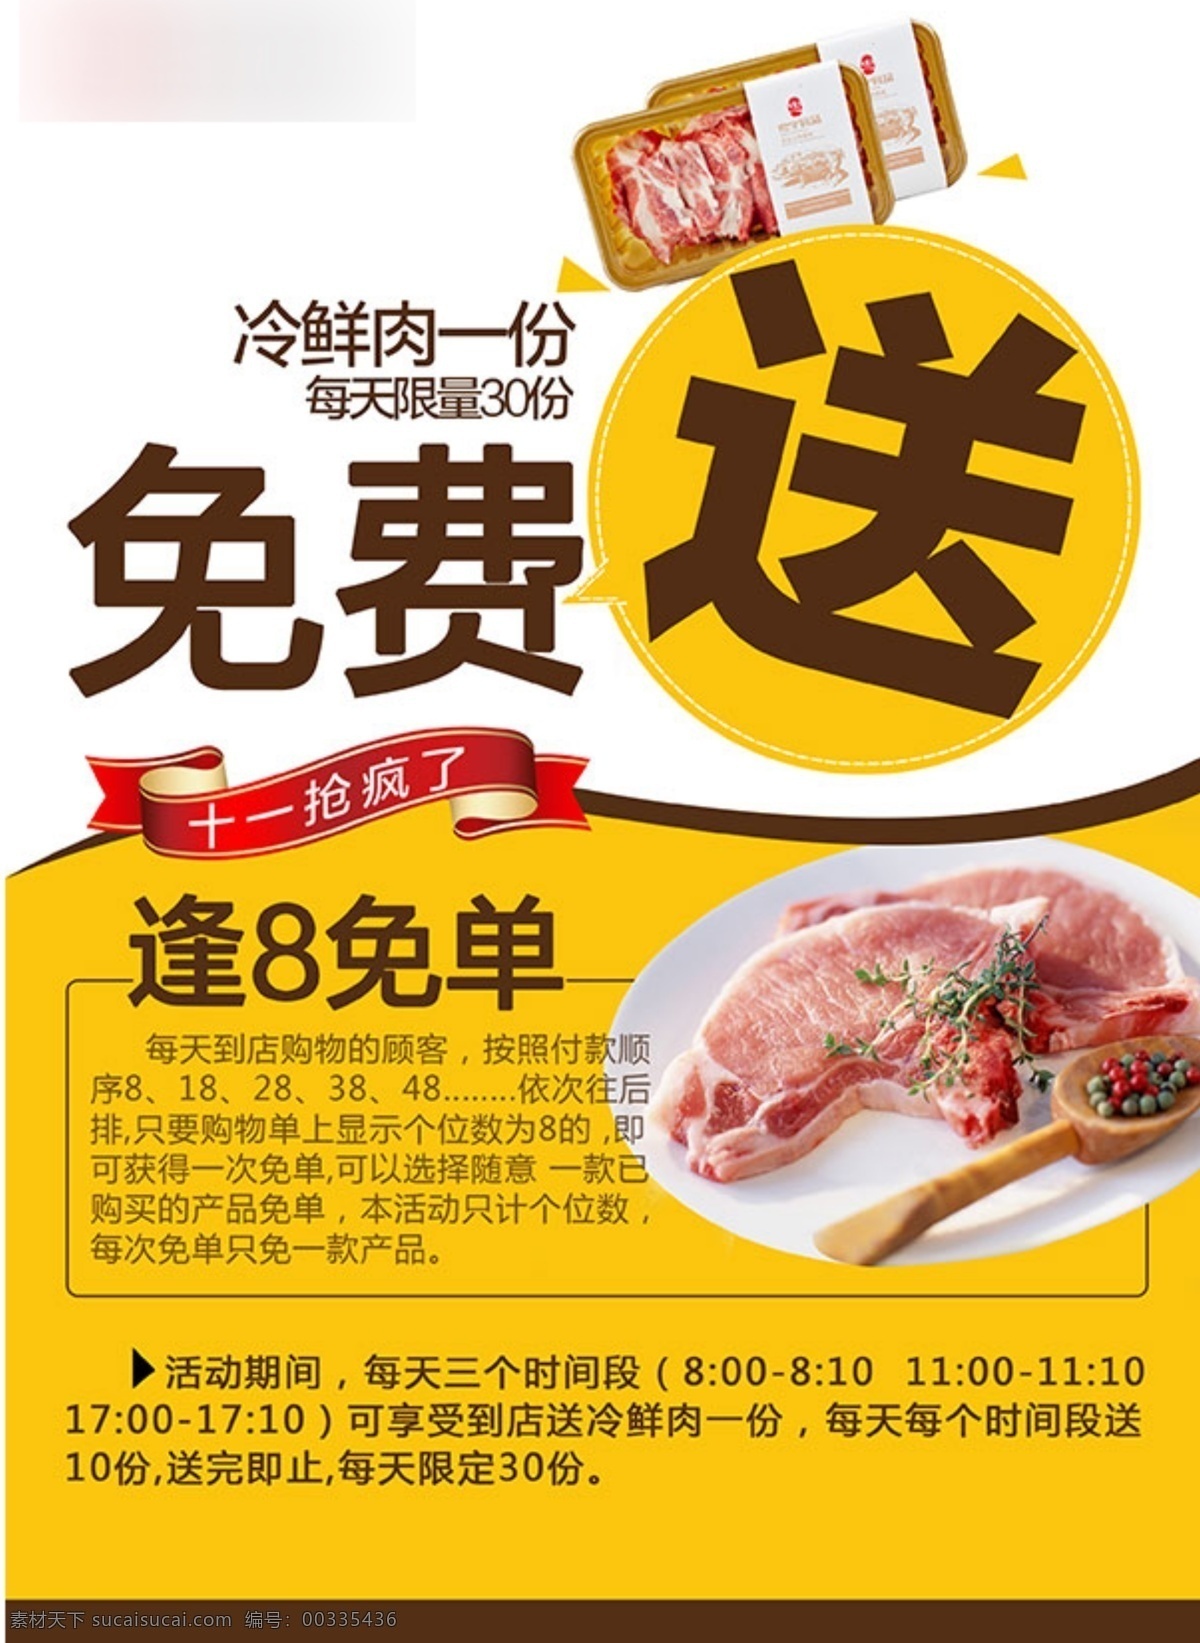 食品 宣传单 海报 促销 广告 黄色背景 食品宣传单 免费送 冷鲜肉 逢8免单